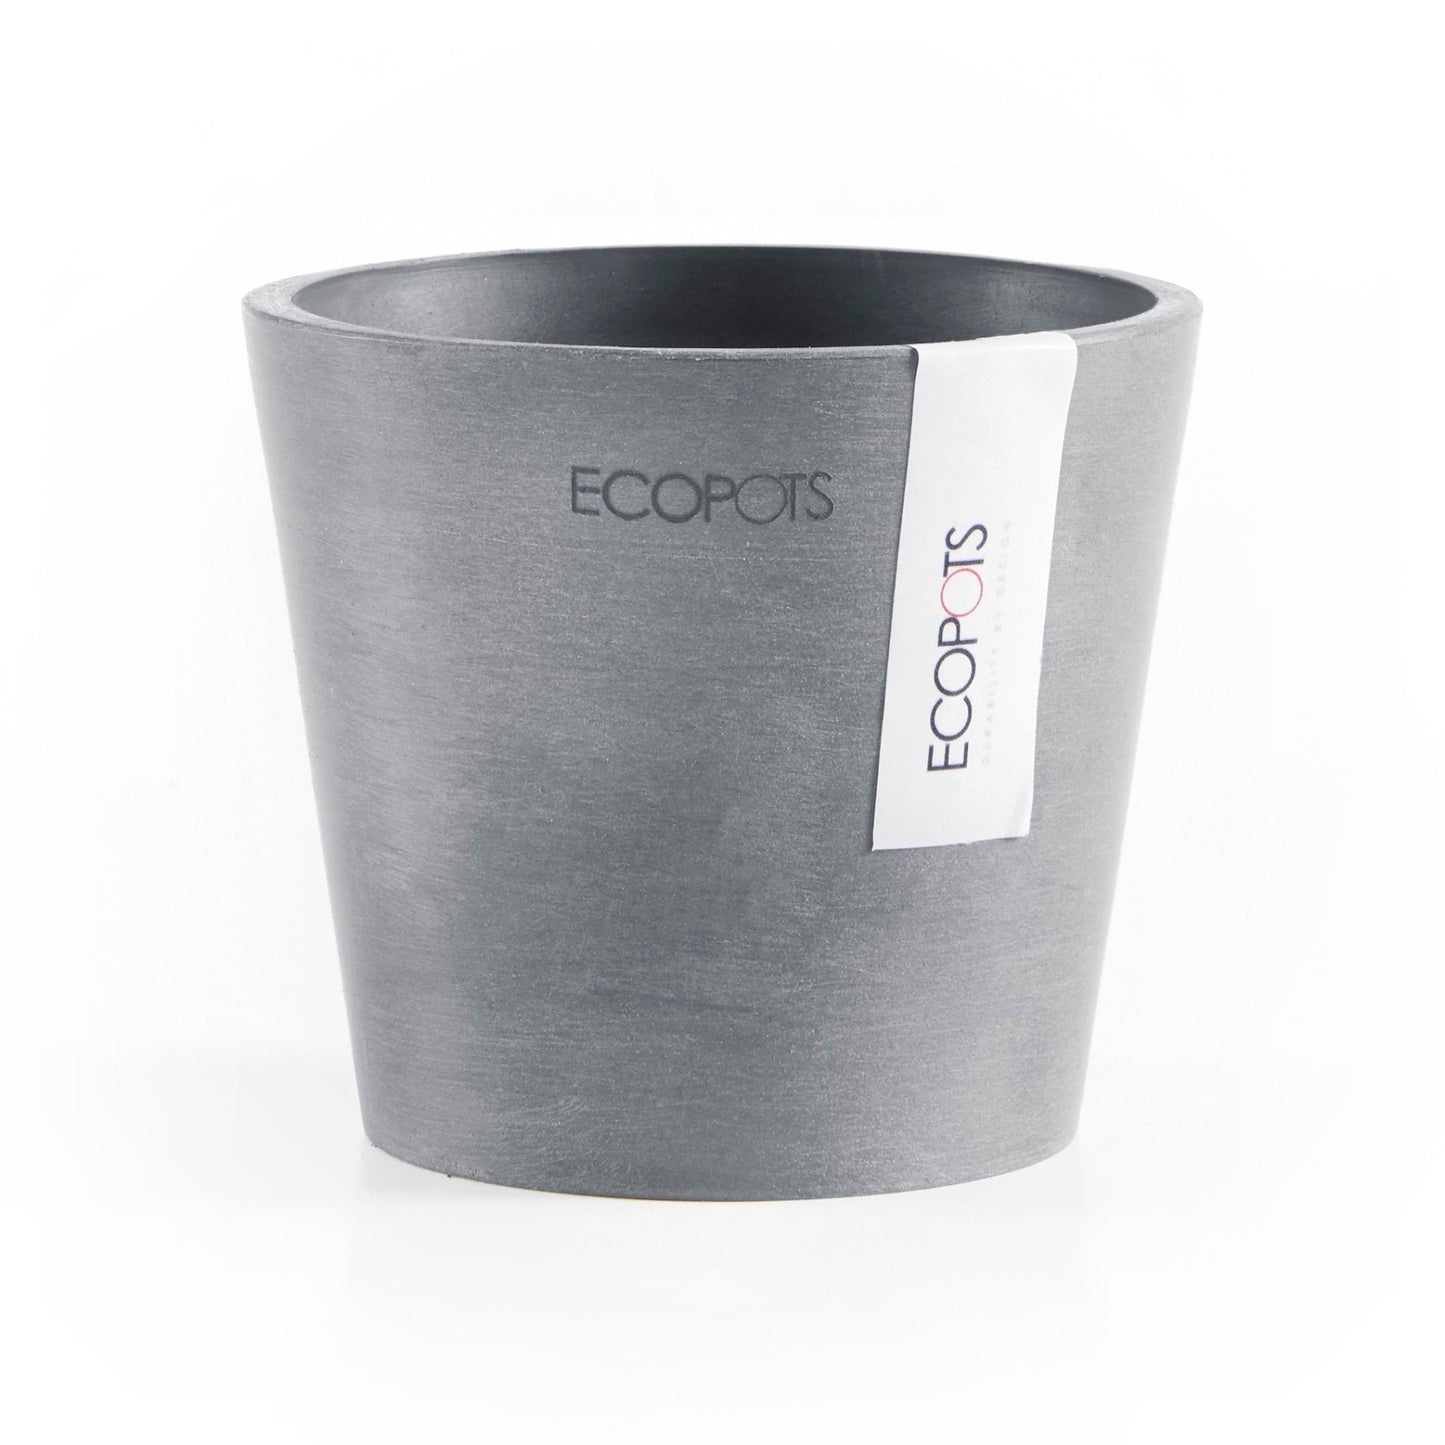 Kukkaruukku - Ecopots - Kukkaruukku Amsterdam 10,5cm siniharmaa - Ecopots - Uuden aikakauden kukkaruukku kierrätysmateriaalista